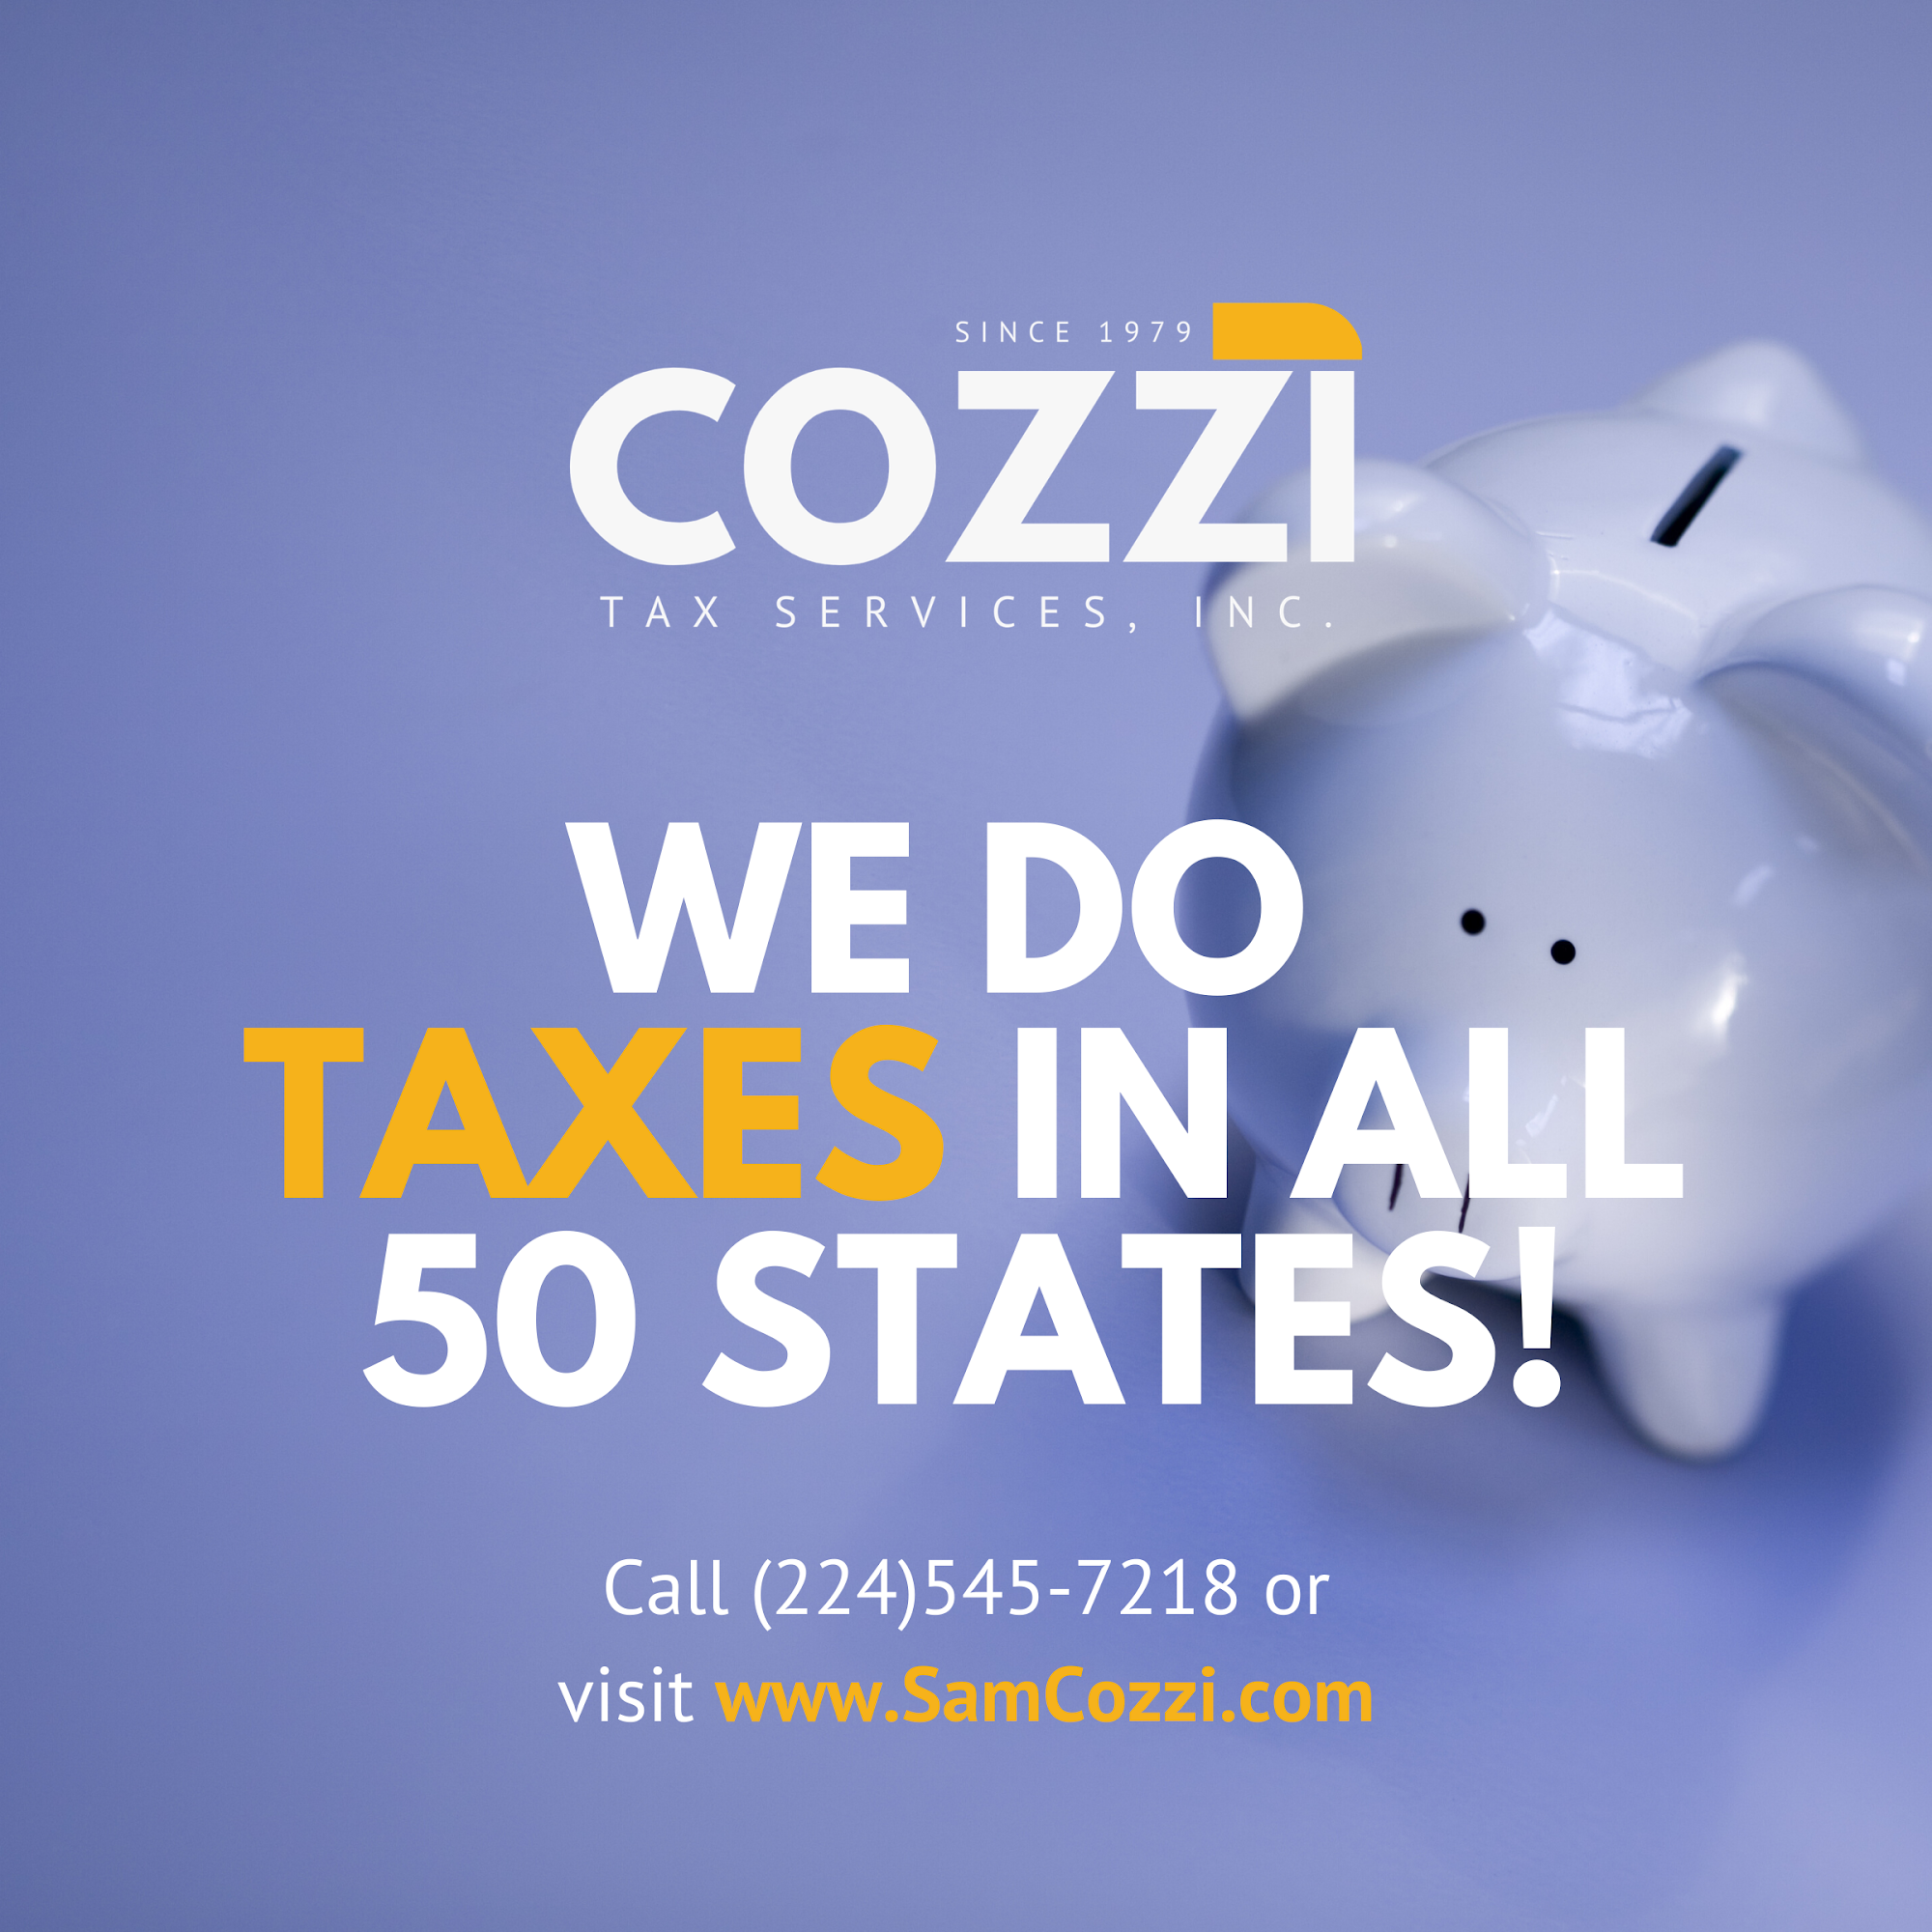 Cozzi Tax Services, Inc.